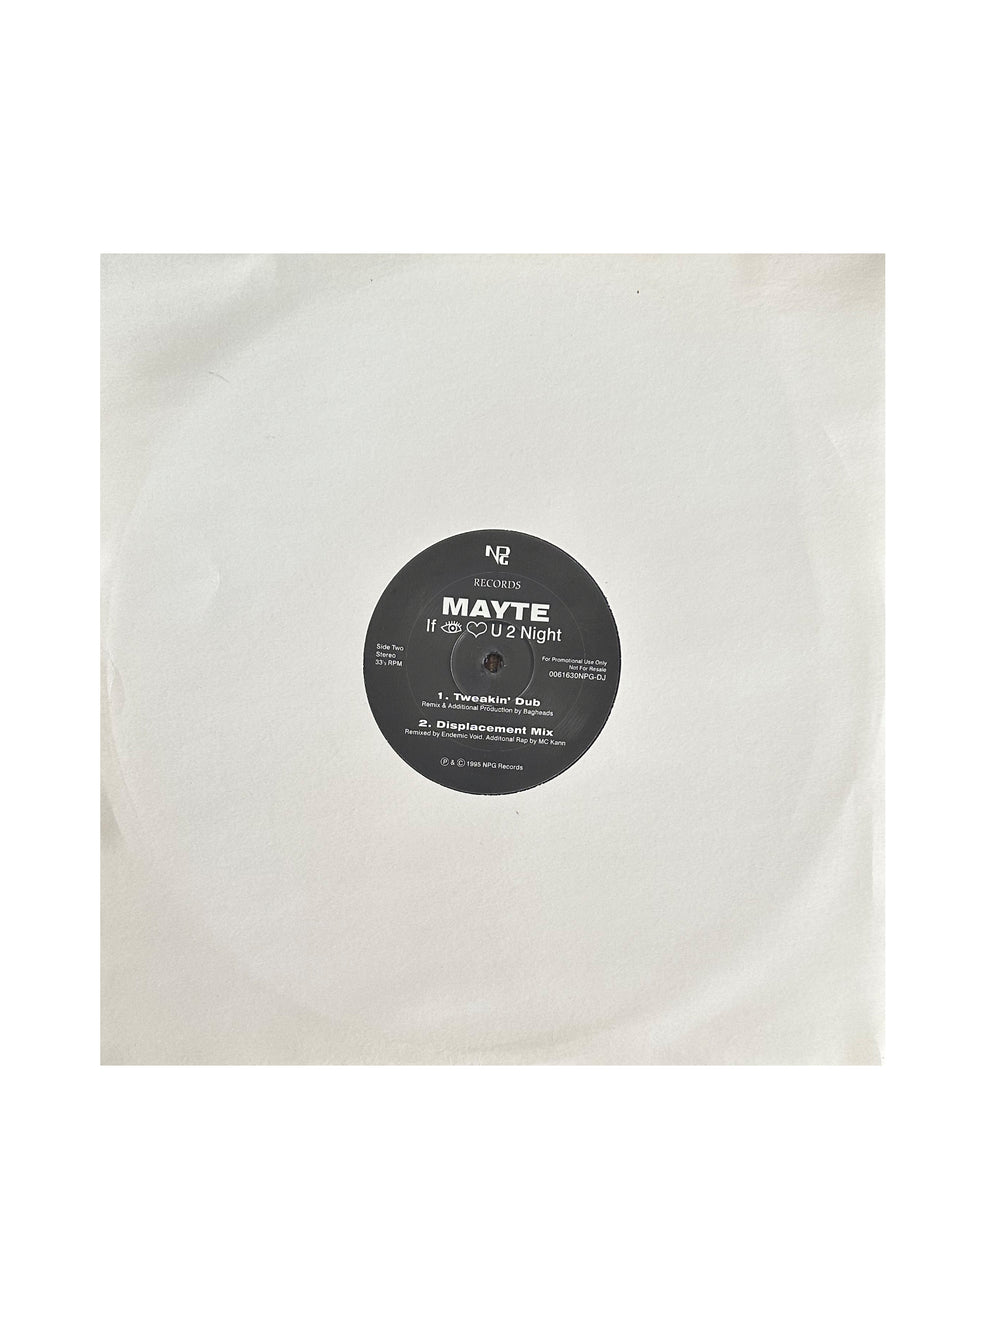 Prince - Mayte If I Love U 2 Night Vinyl 12" Single Promo UK NPG Records Preloved: 1995